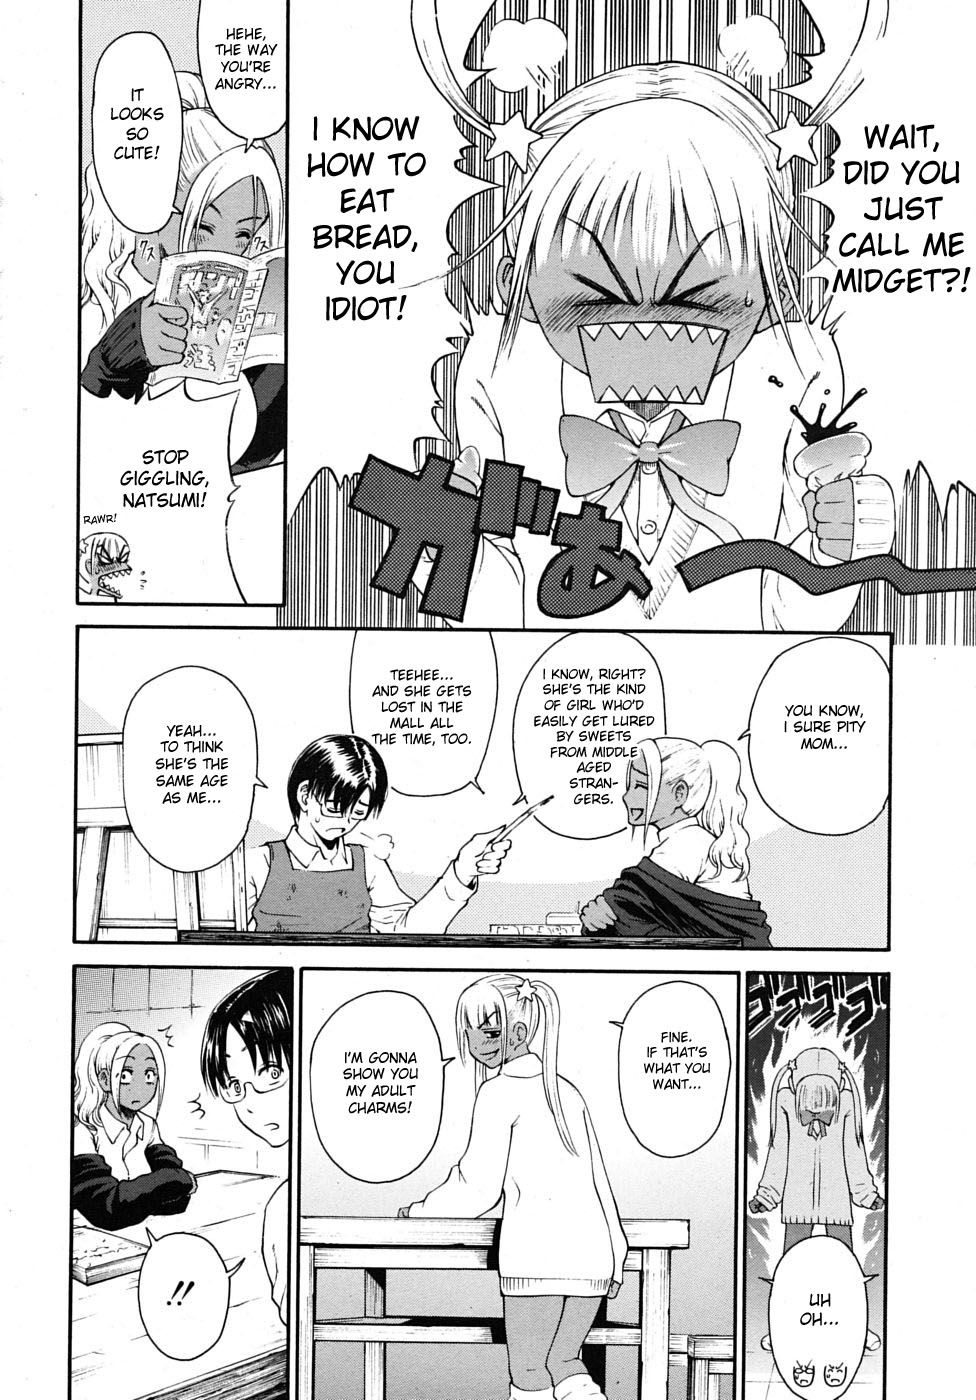 Hentai Manga Comic-Don't Call Me a midget !-Read-2